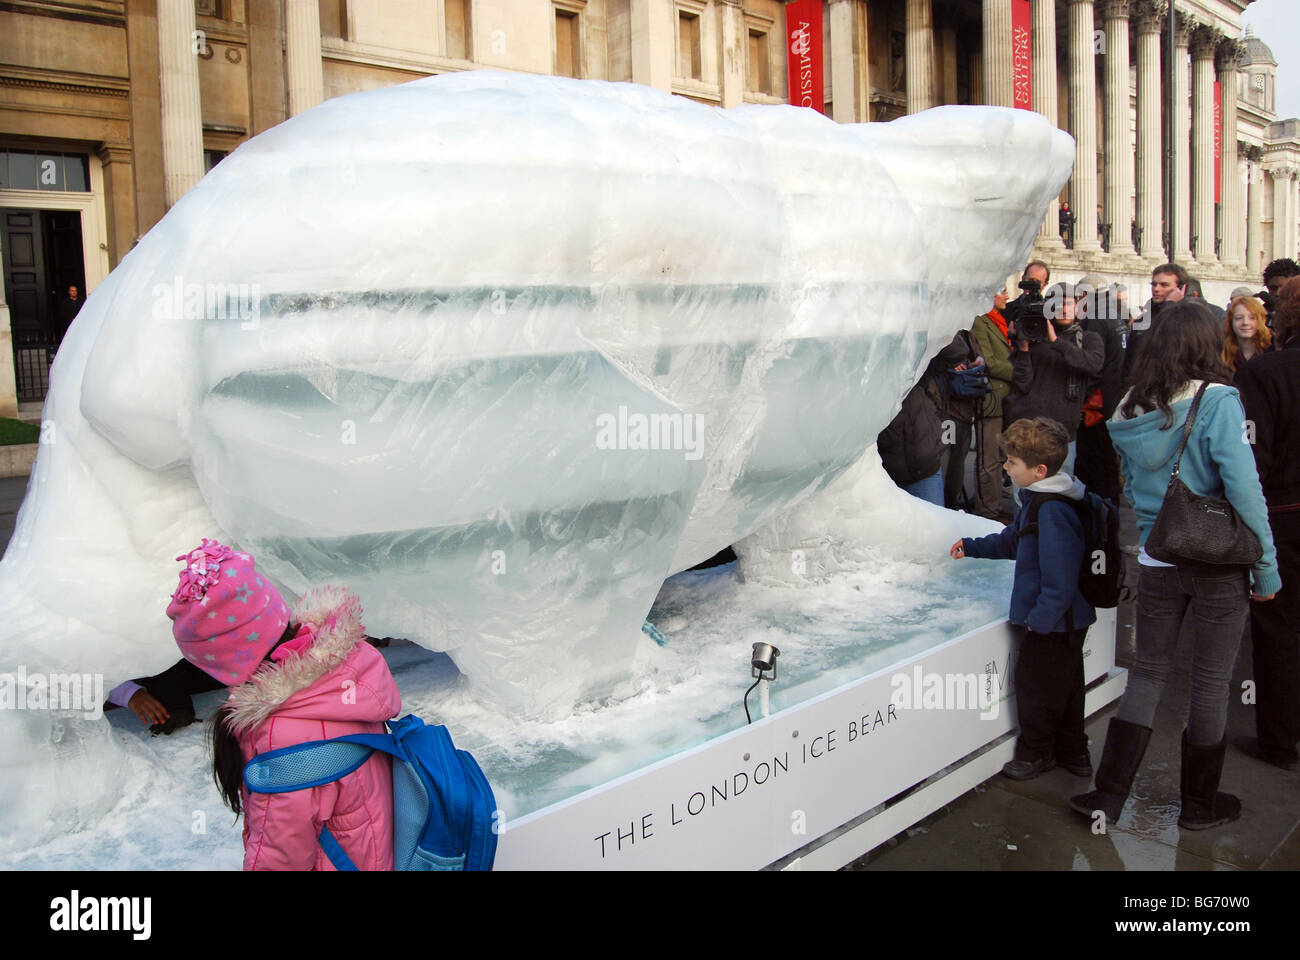 Le London Ice Bear camp climatique Banque D'Images